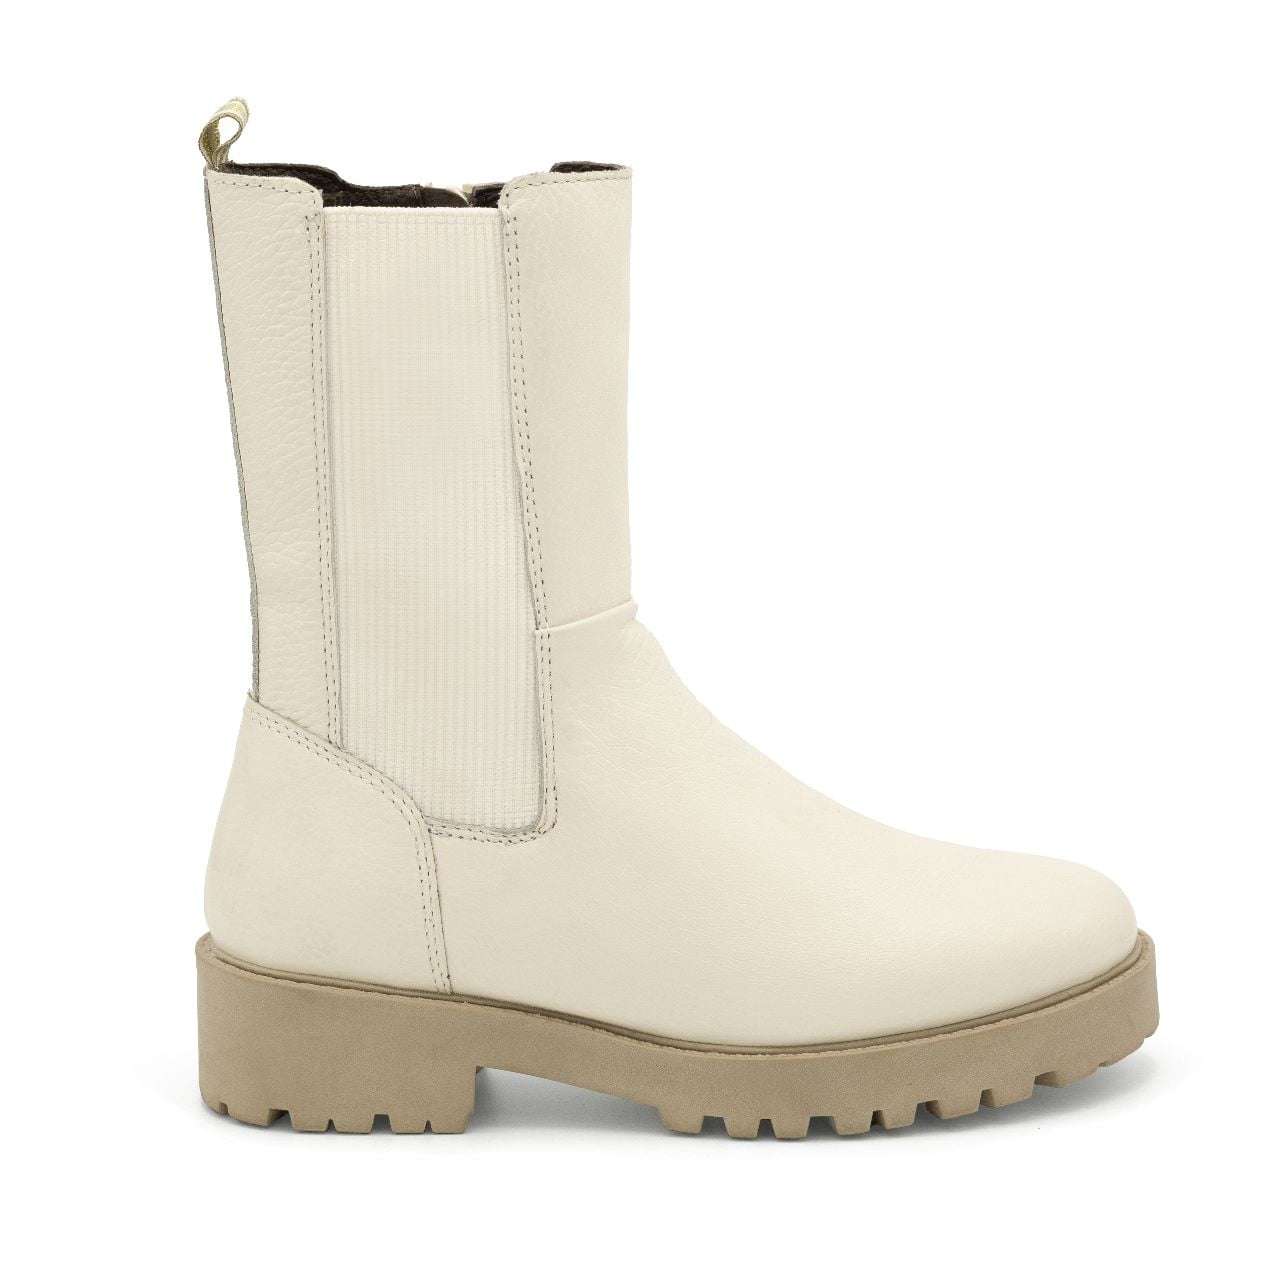 Codigo white boot